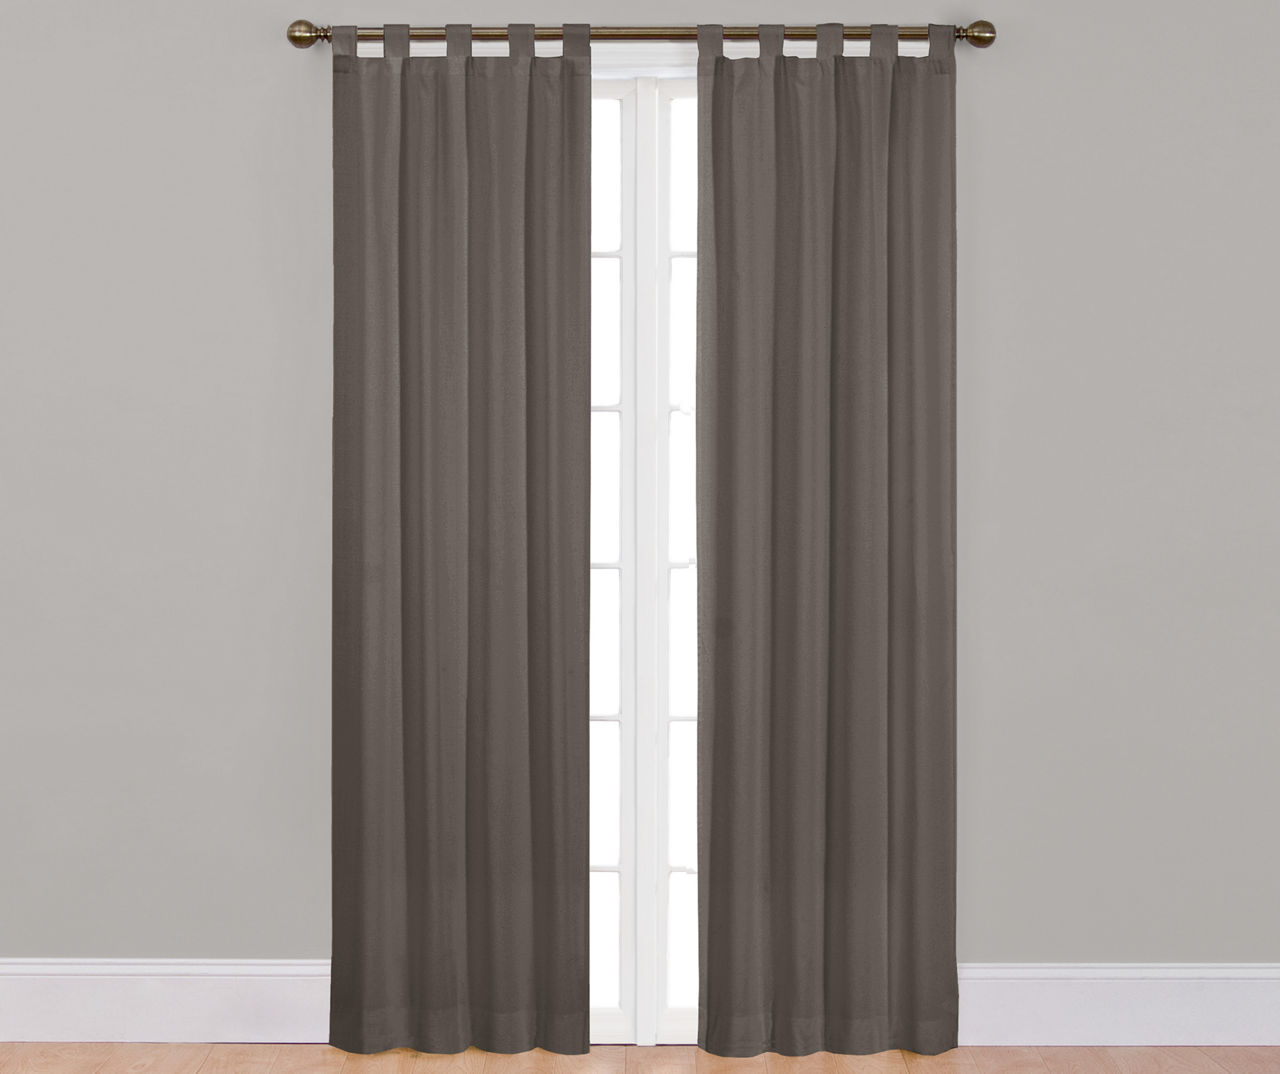 Colorado Gray Curtain Panel Pair, (84")